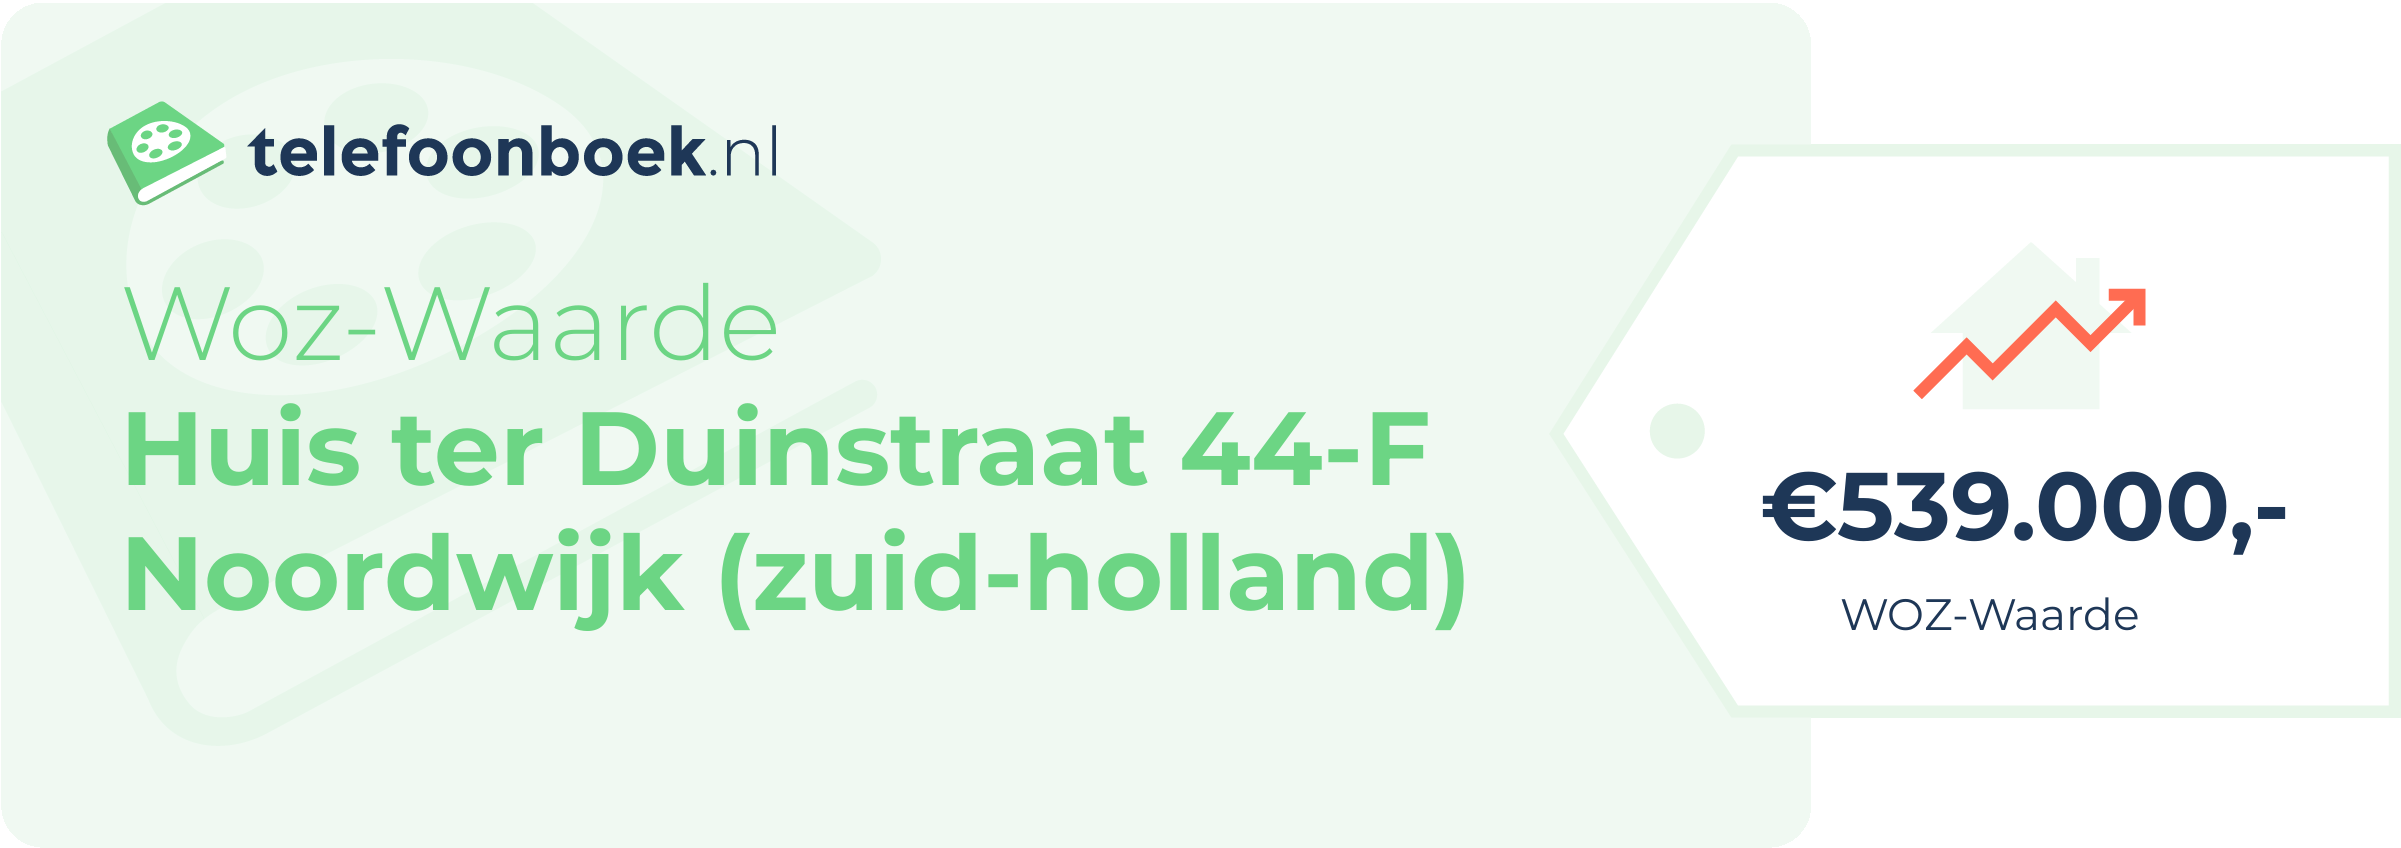 WOZ-waarde Huis Ter Duinstraat 44-F Noordwijk (Zuid-Holland)